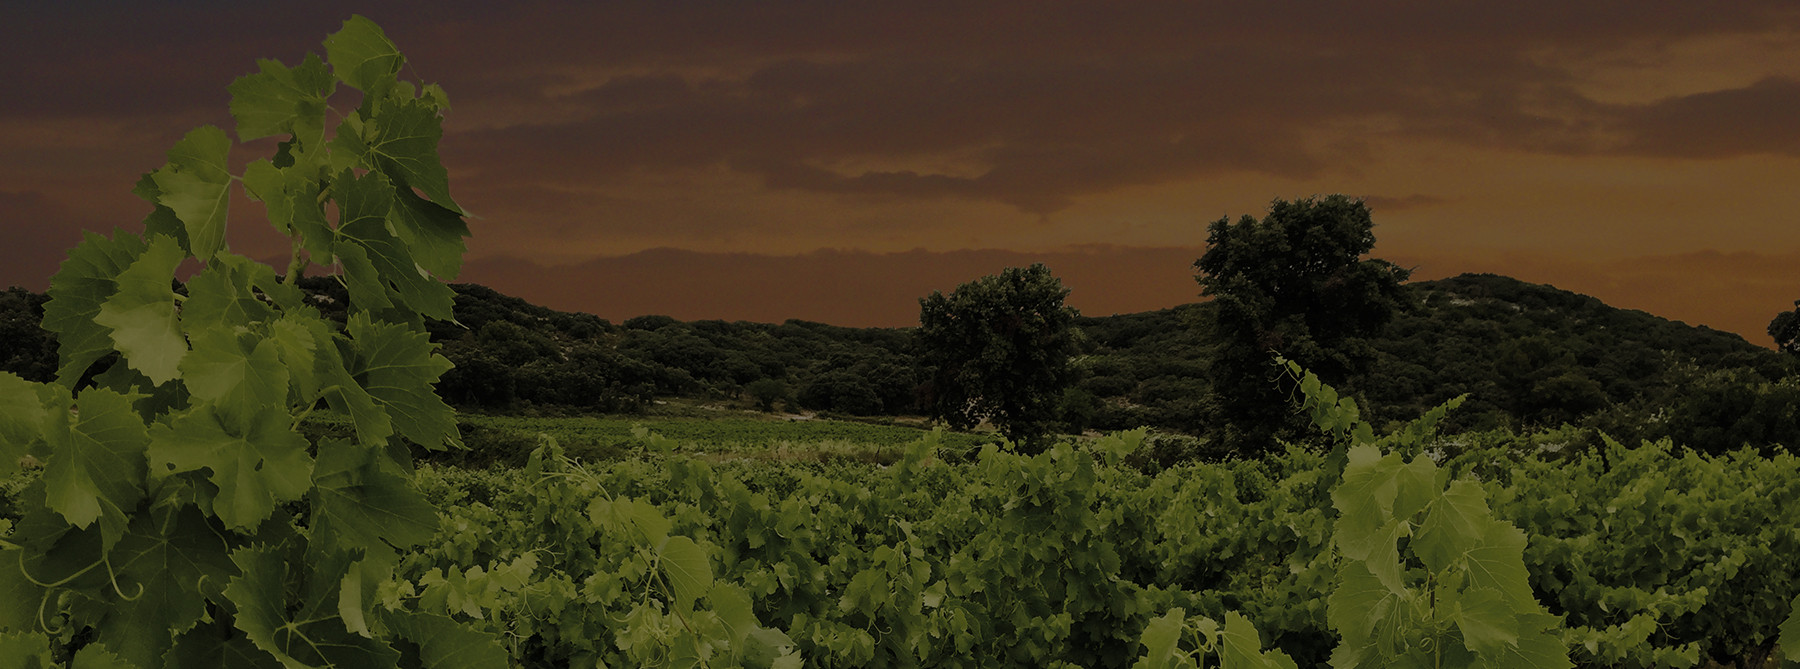 Les vignes du domaine Roc Folassière sous un ciel orange